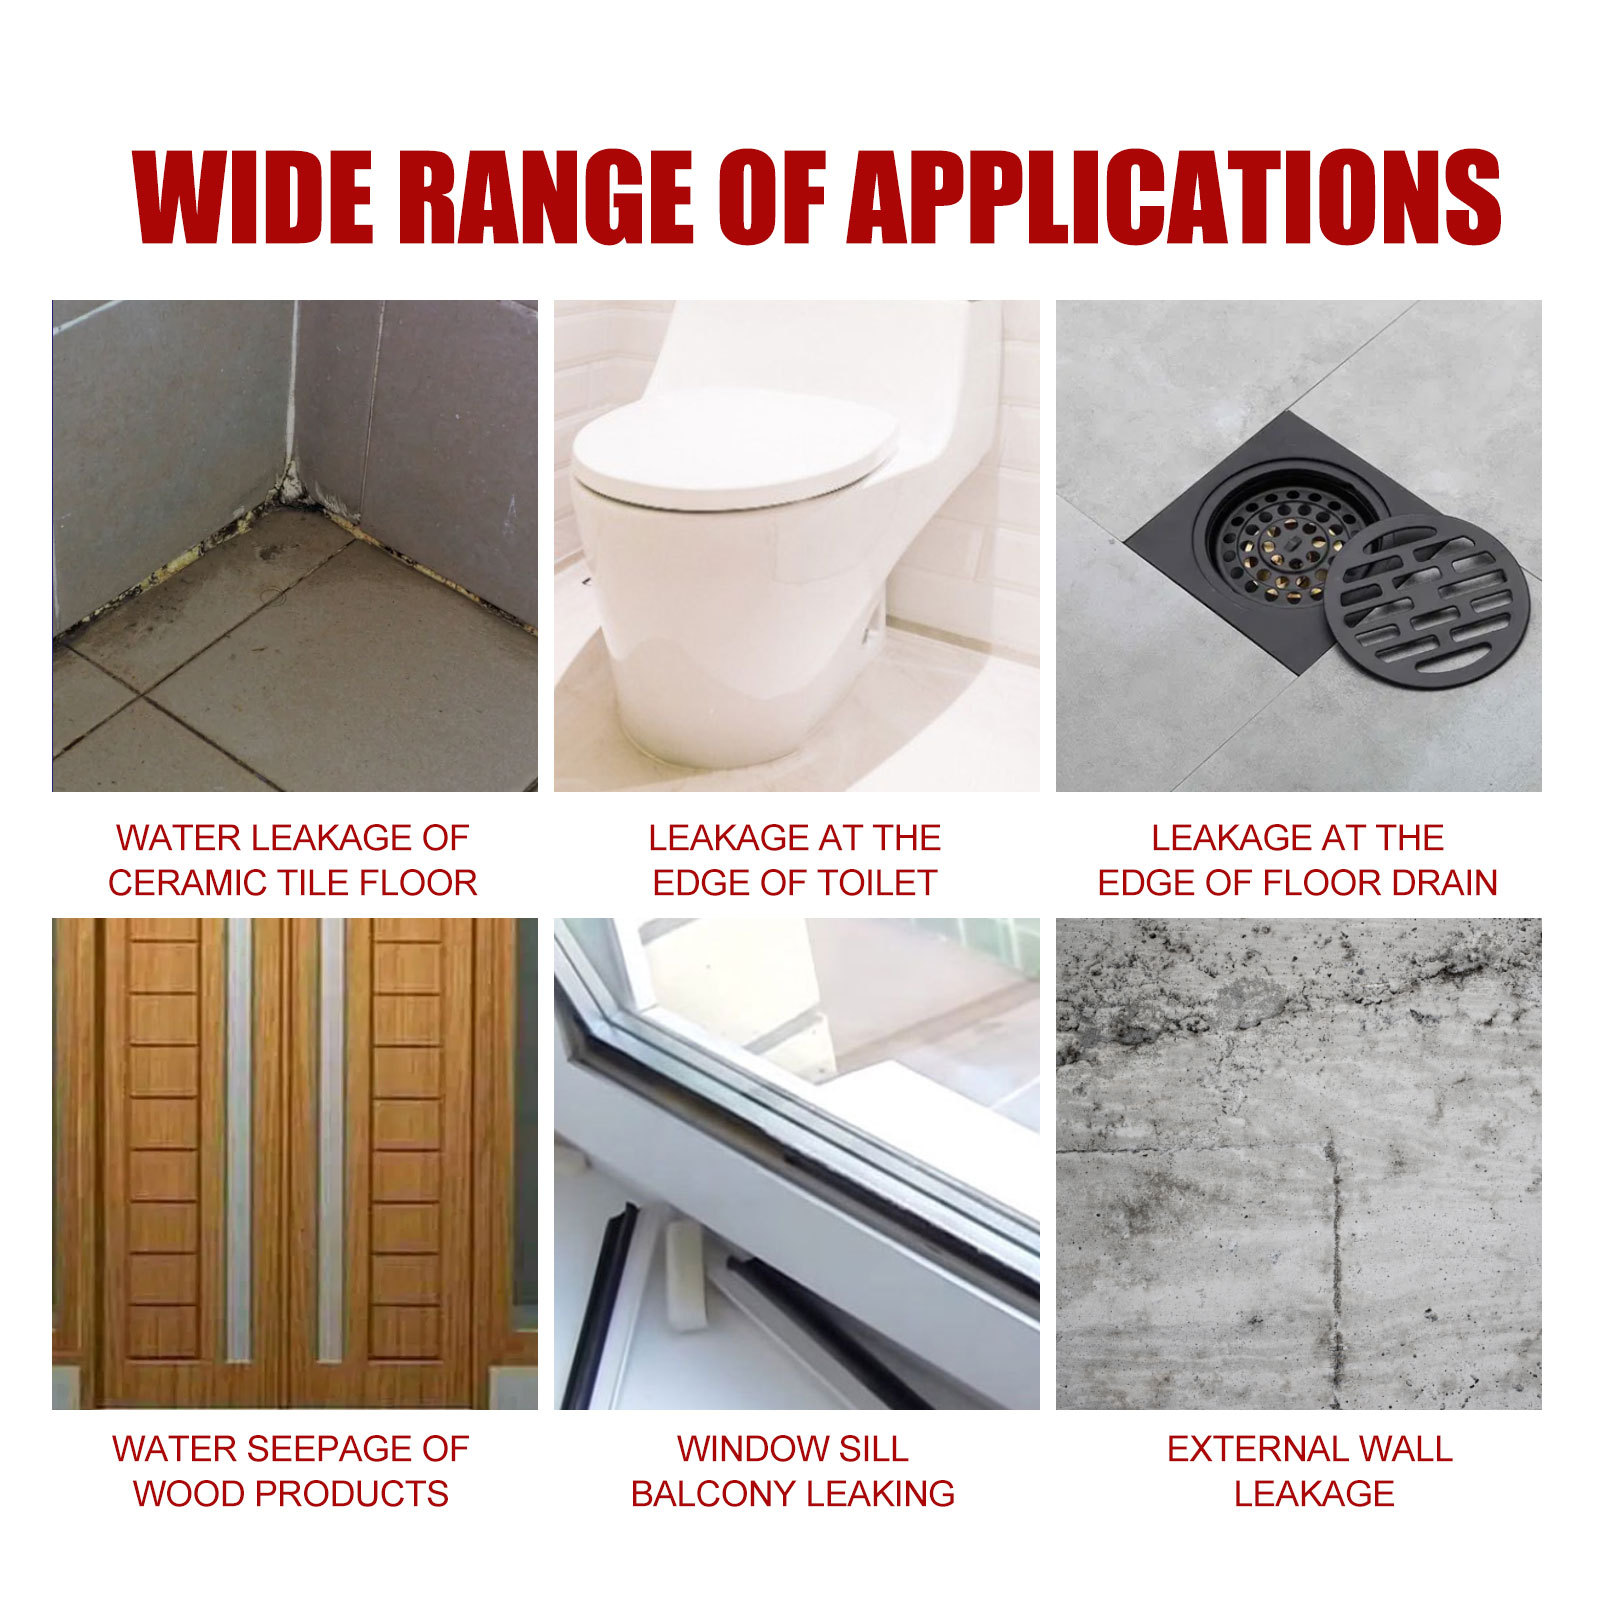 Super Waterproof Glue Toilet Anti-leak Transparent Repairing House Leak  Adhesive Insulating Duct Strong Repair